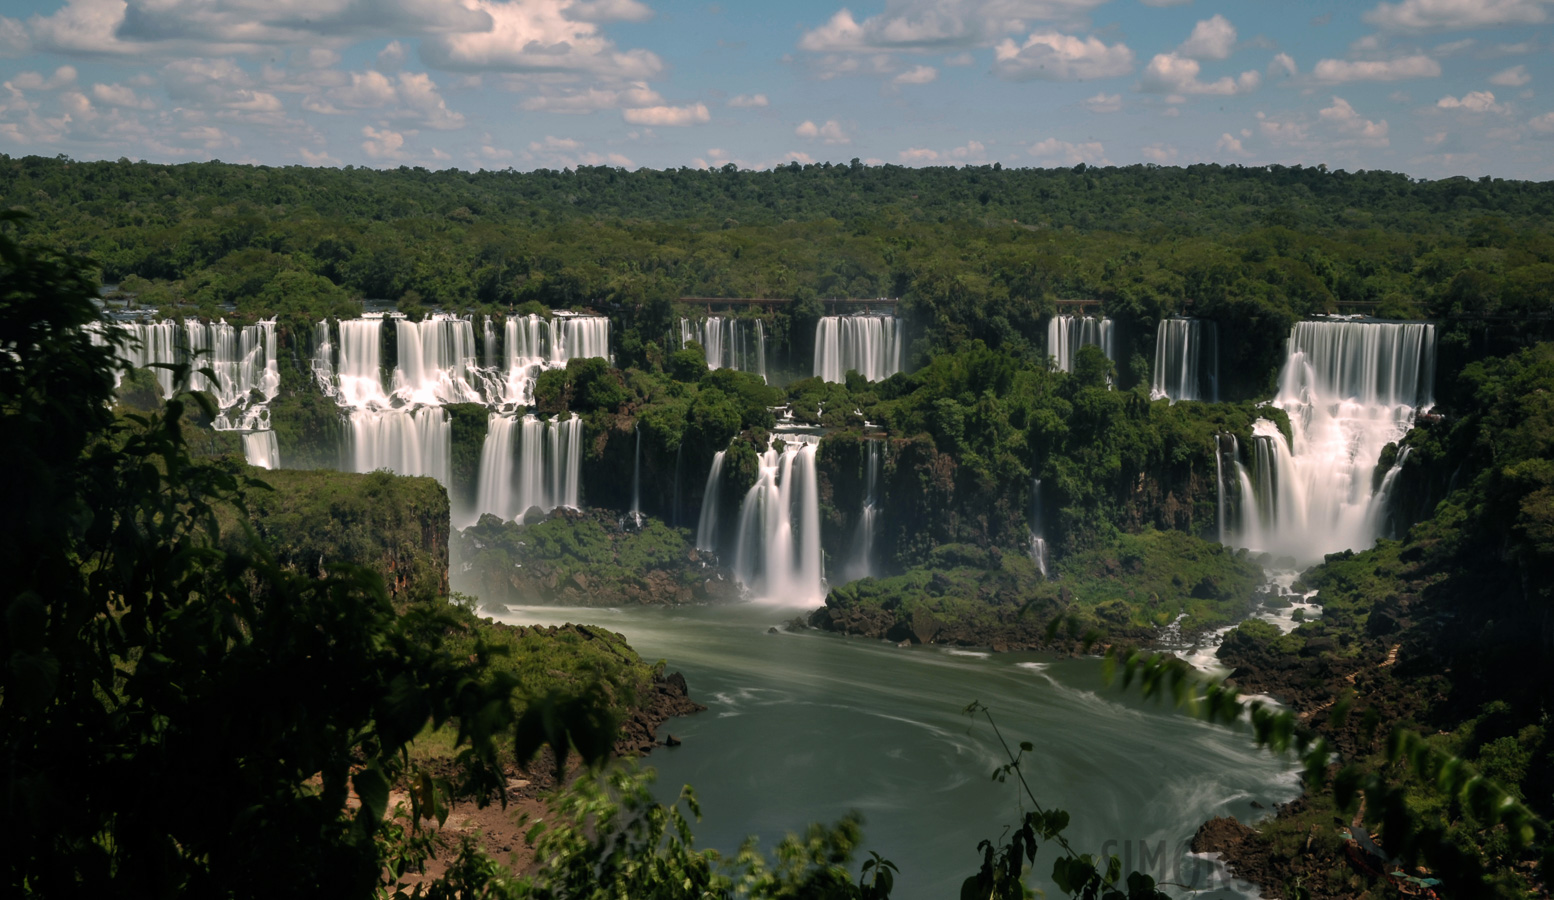 Cataratas del Iguazu [48 mm, 30.0 sec at f / 25, ISO 100]